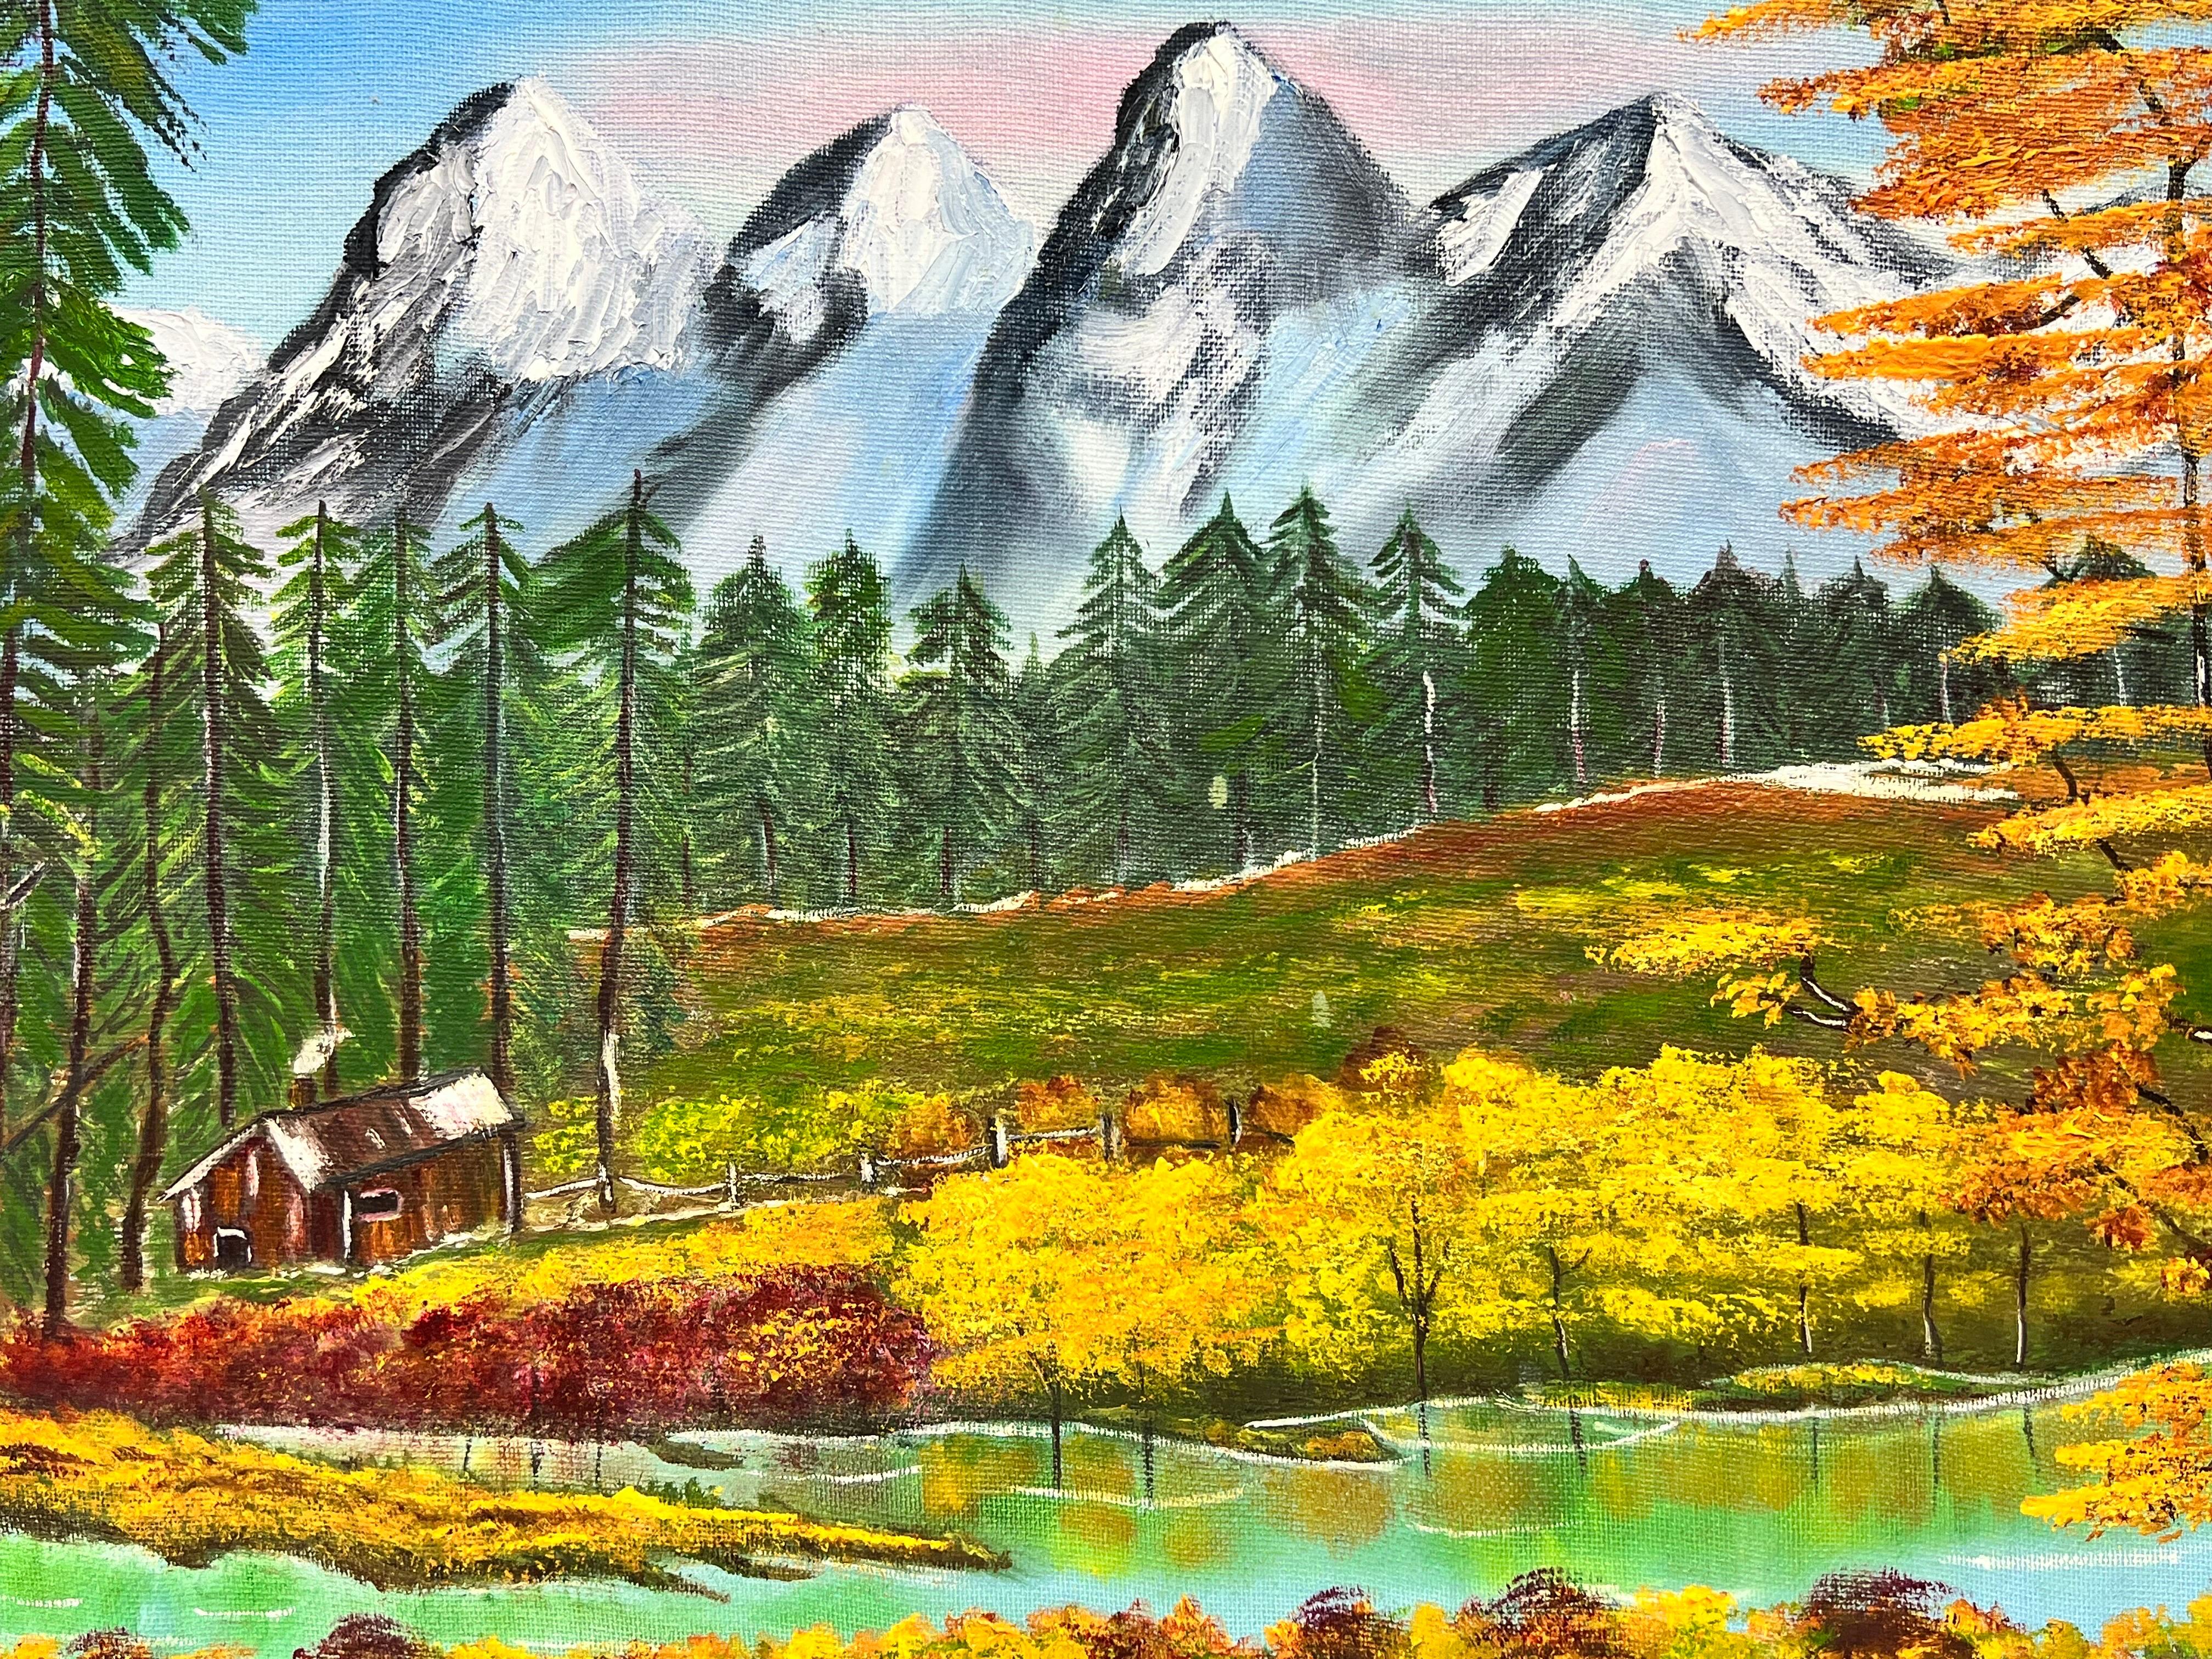 Scottish Highland Snow Capped Mountains, Original britisches Gemälde – Painting von Ben Powell